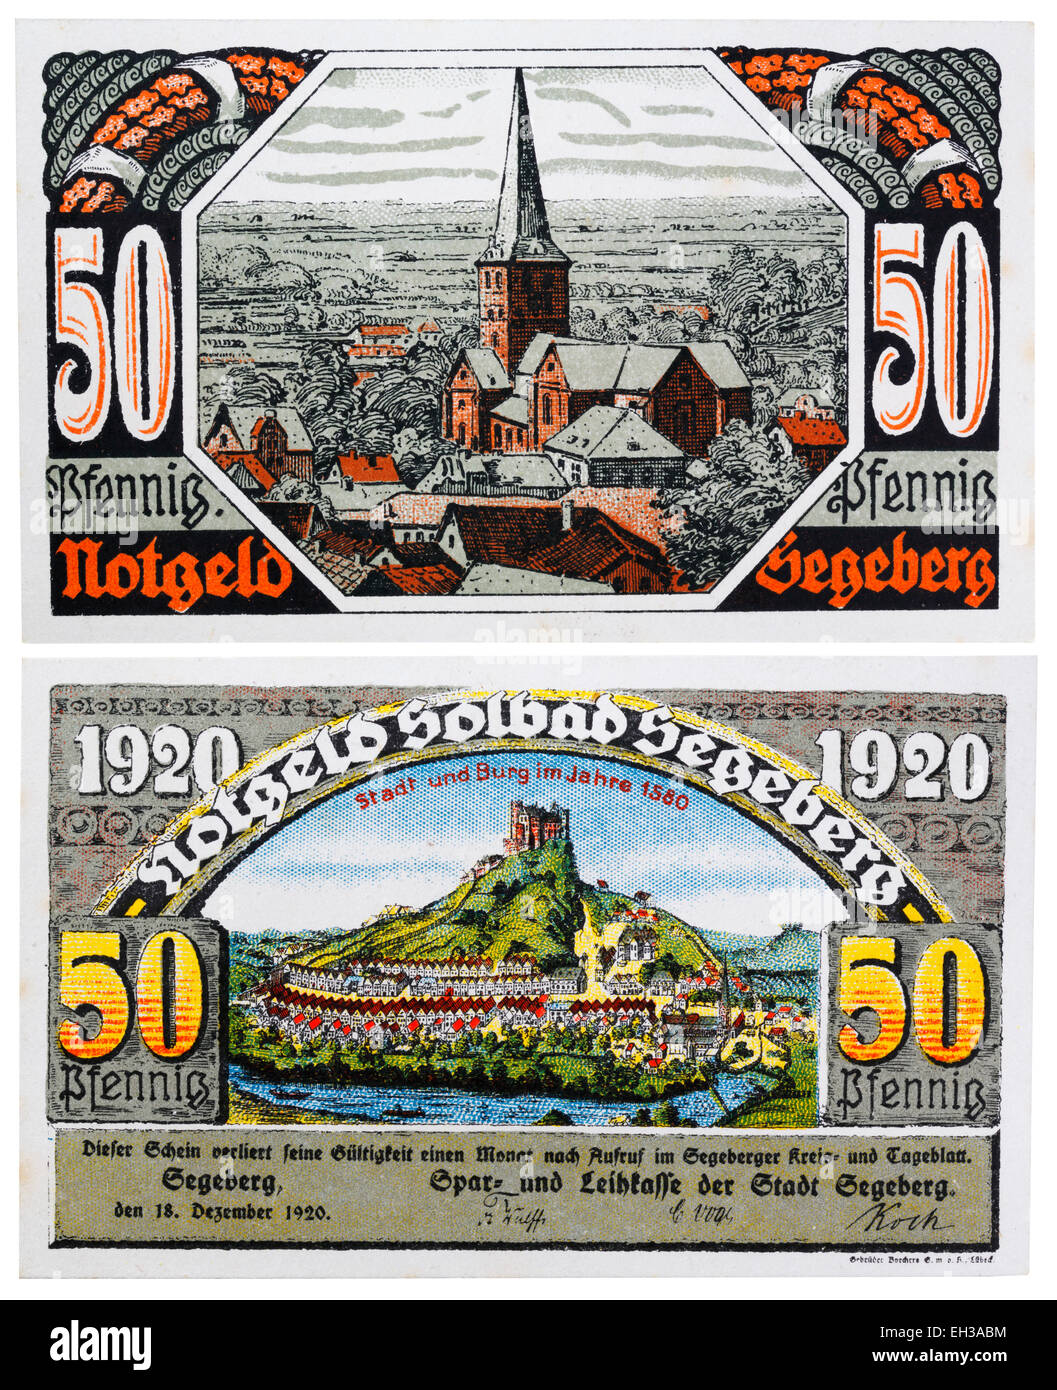 50 pfennig, billetes notgeld, Segeberg, Schleswig-Holstein, Alemania, 1920 Foto de stock